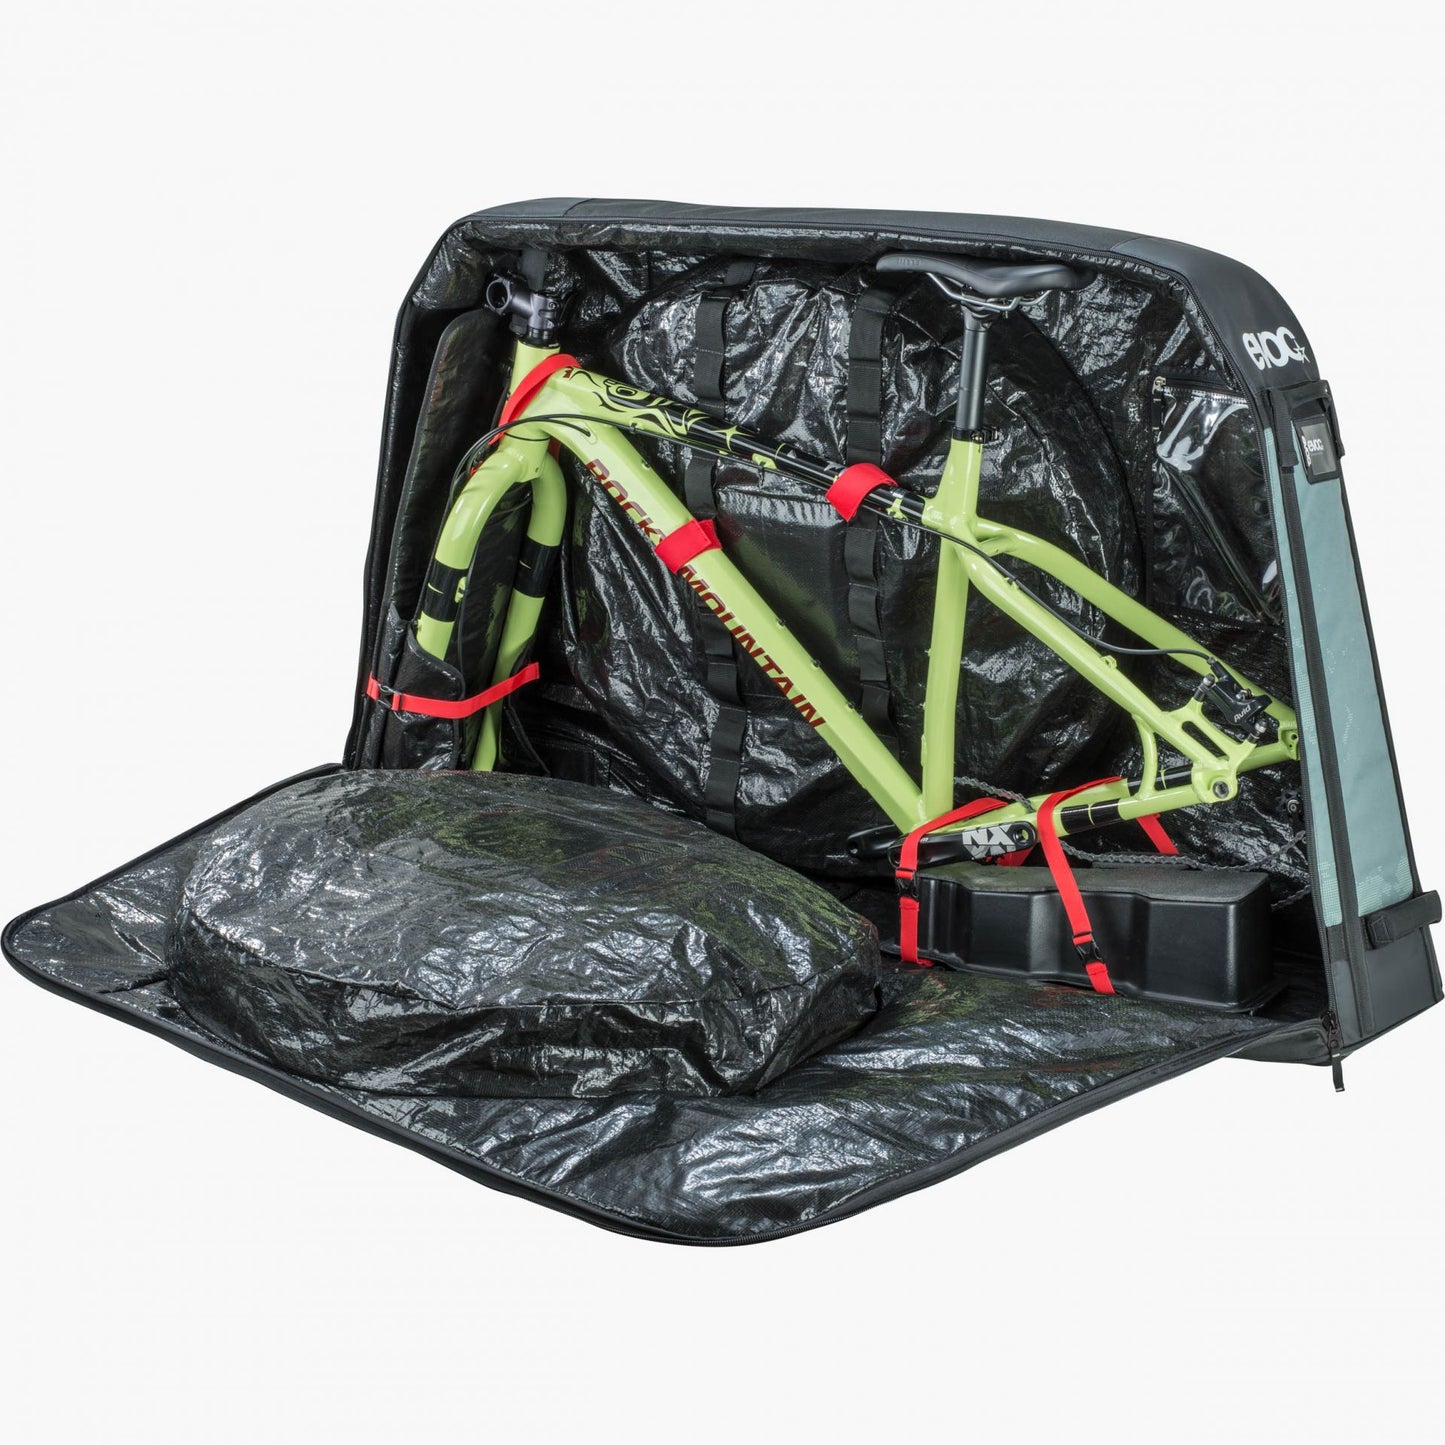 EVOC Bike Travel Bag XL - Bike Travel Case for Fat Bikes and Plus Bikes Airplane, Train, and Car Travel Bike Bag - Olive